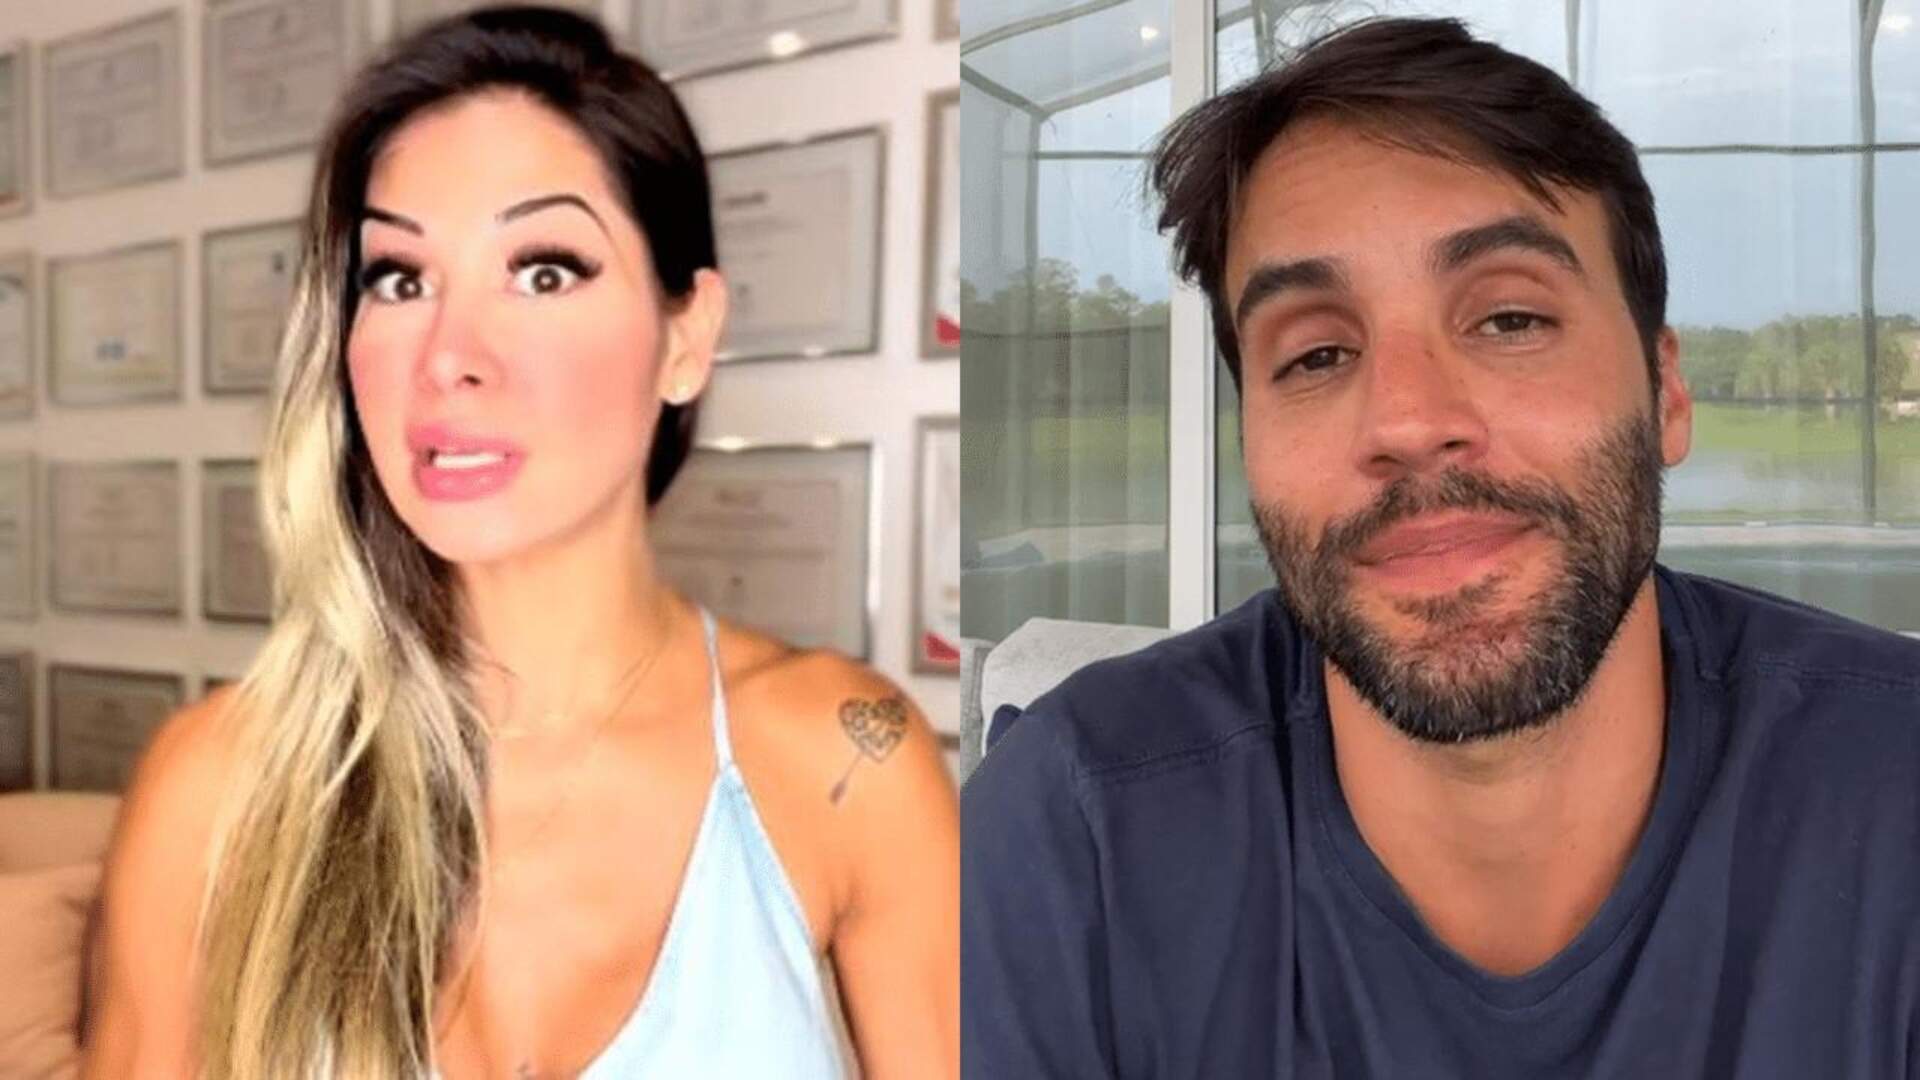 Bate boca: Após vídeo polêmico, Maíra Cardi perde a linha e dá invertida em marido de Ivete Sangalo